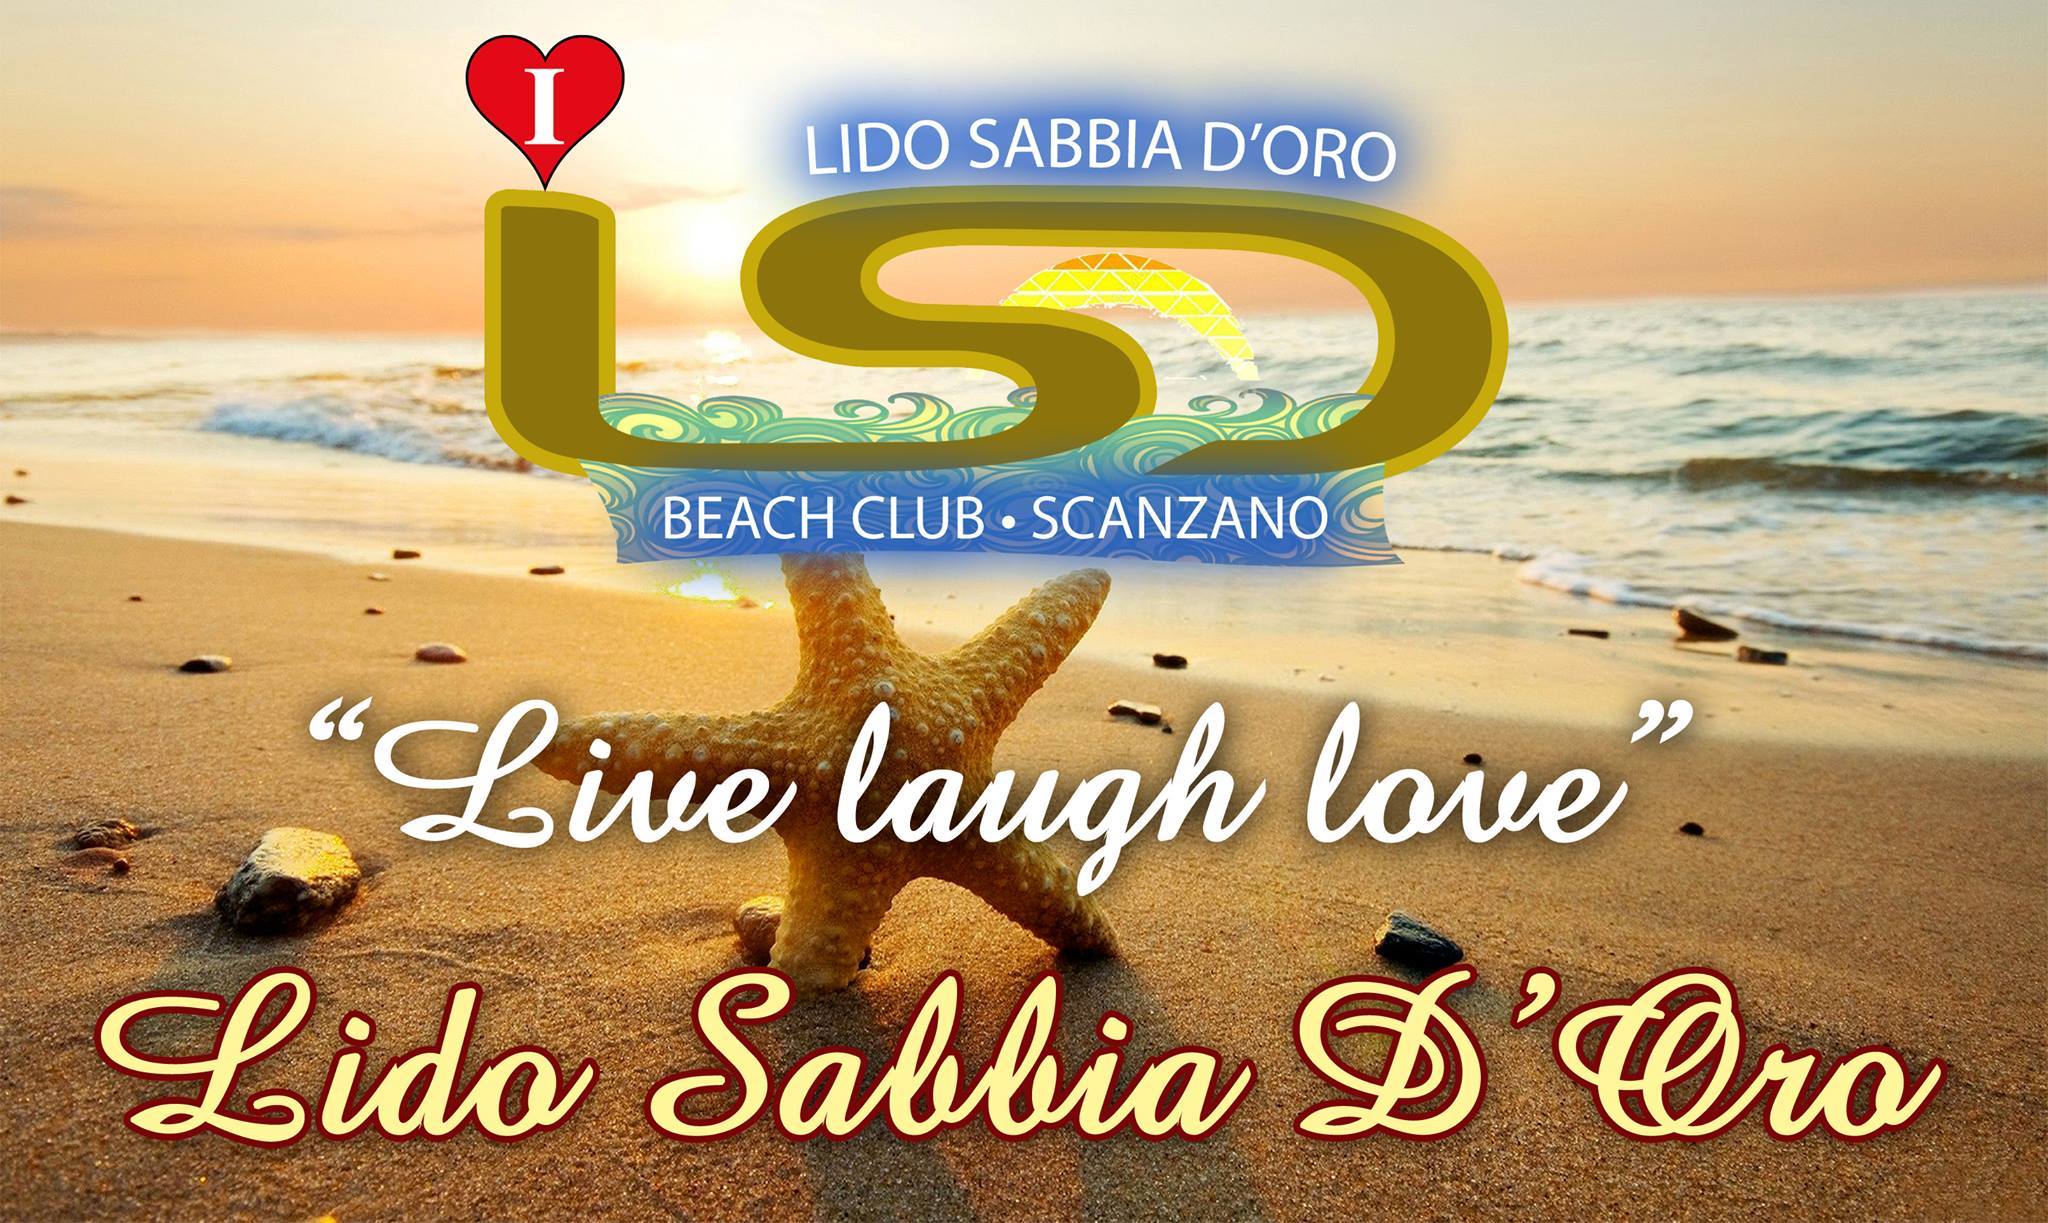 I LOVE LIDO SABBIA D'ORO - BEACH CLUB